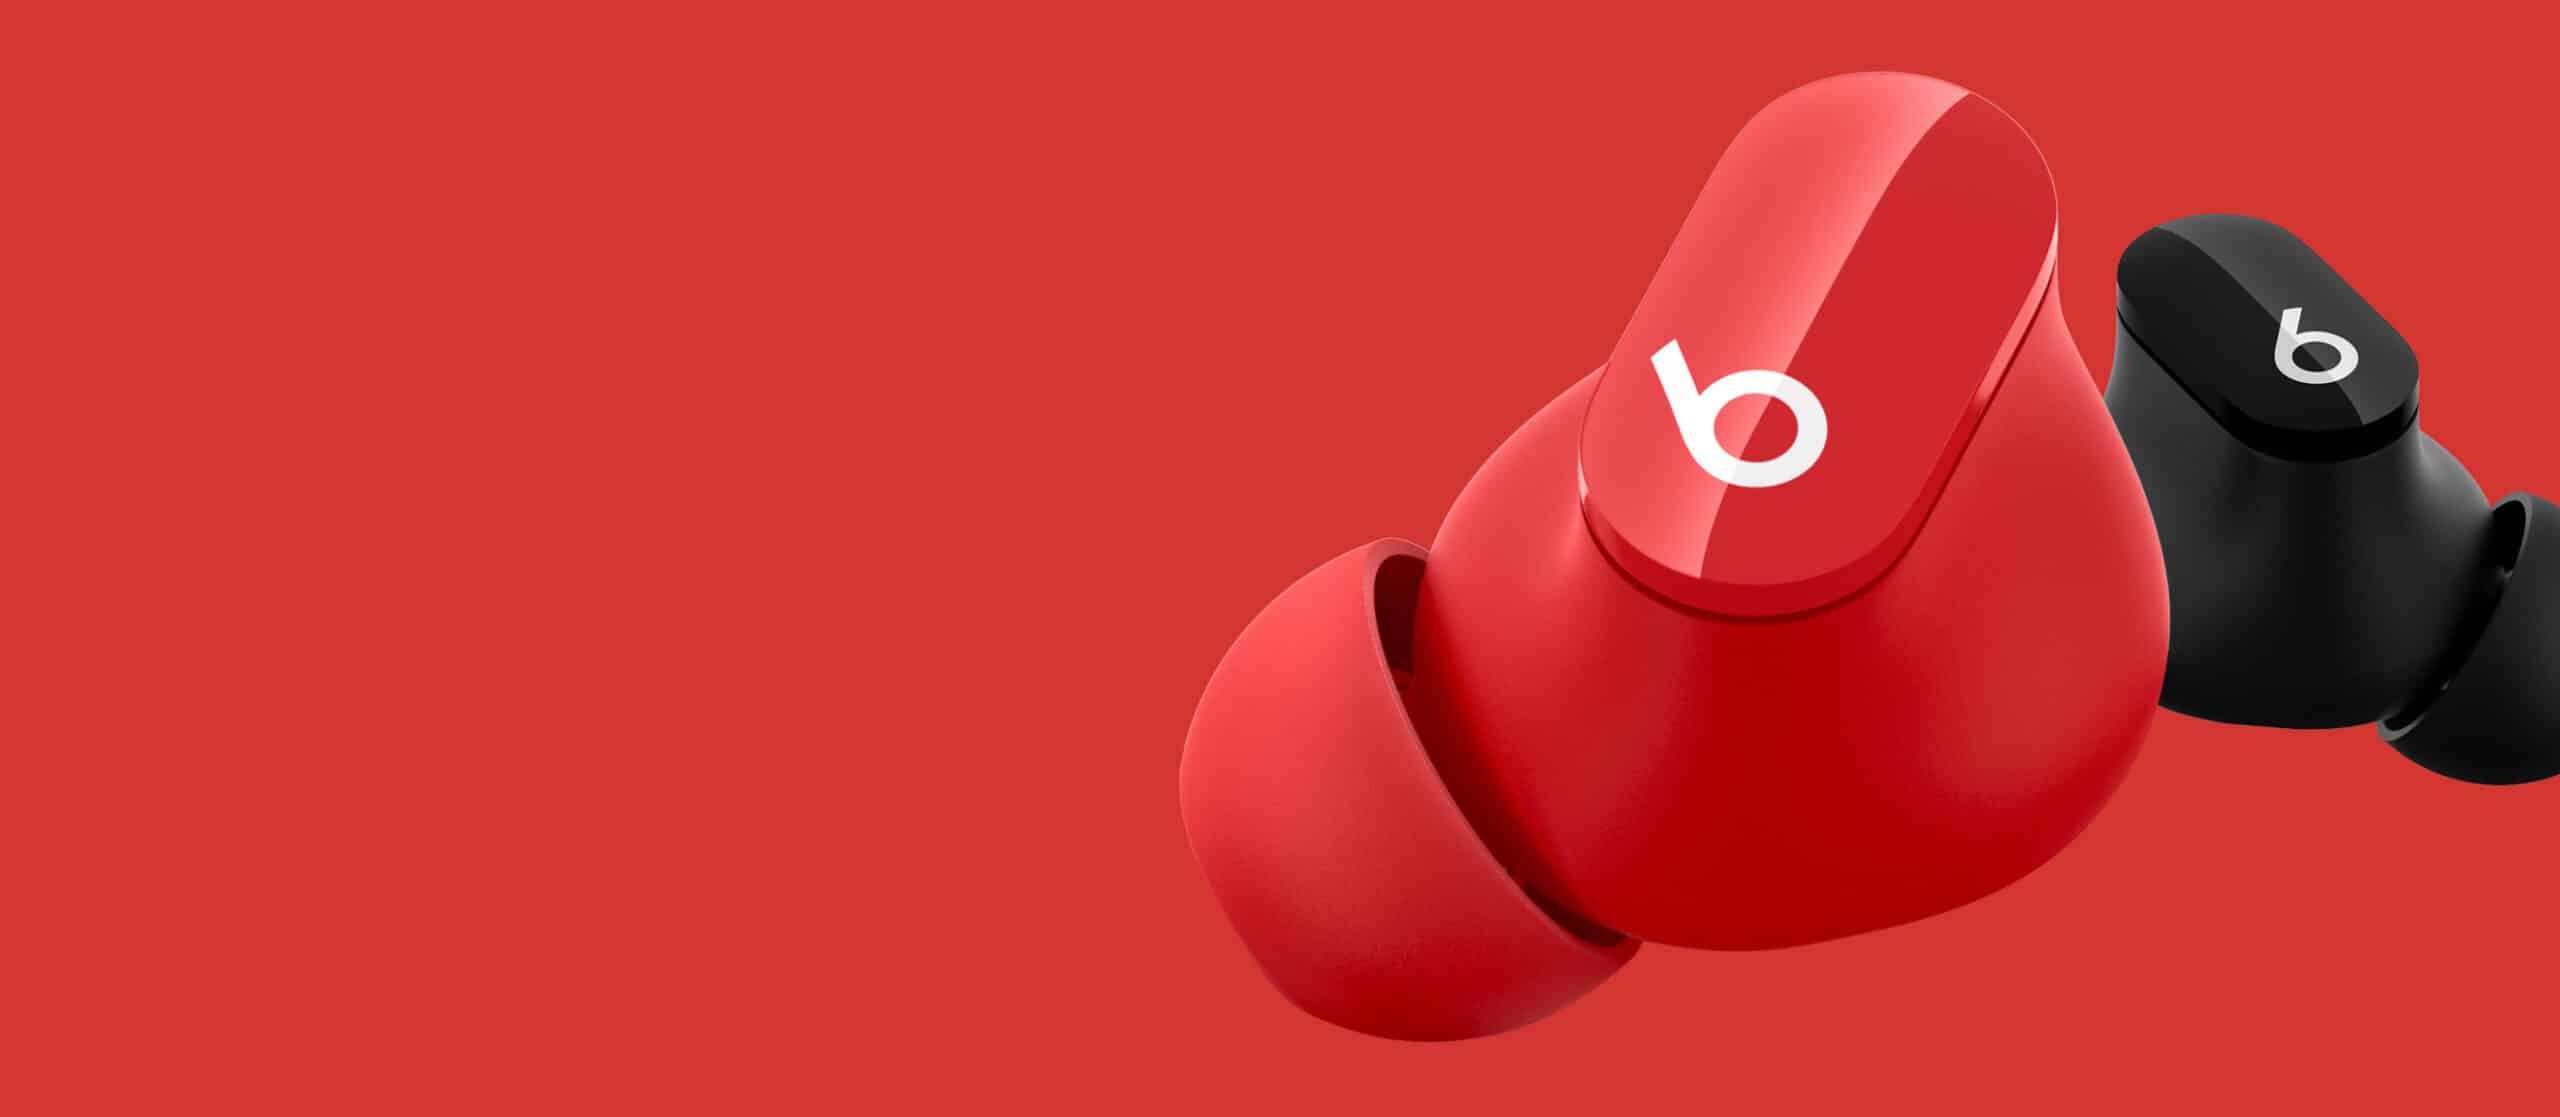 真無線降噪入耳式耳機 Beats Studio Buds 登場 定價比 AirPods Pro 便宜 - 流動日報